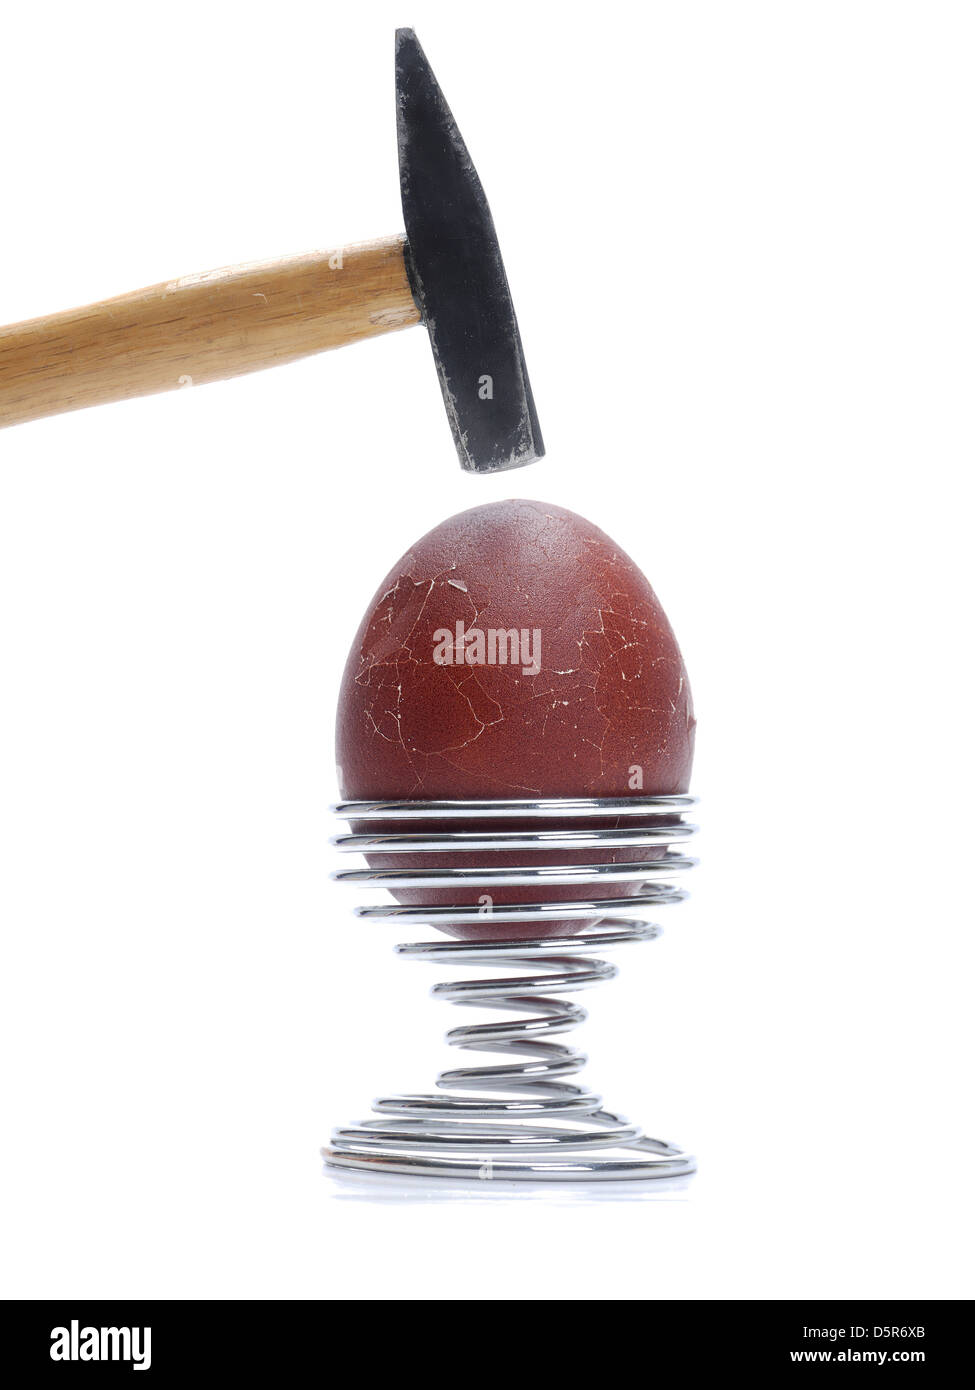 Huevo con cáscara de huevo de color marrón oscuro en el soporte de metal siendo golpeado por disparo de martillo en fondo blanco. Foto de stock